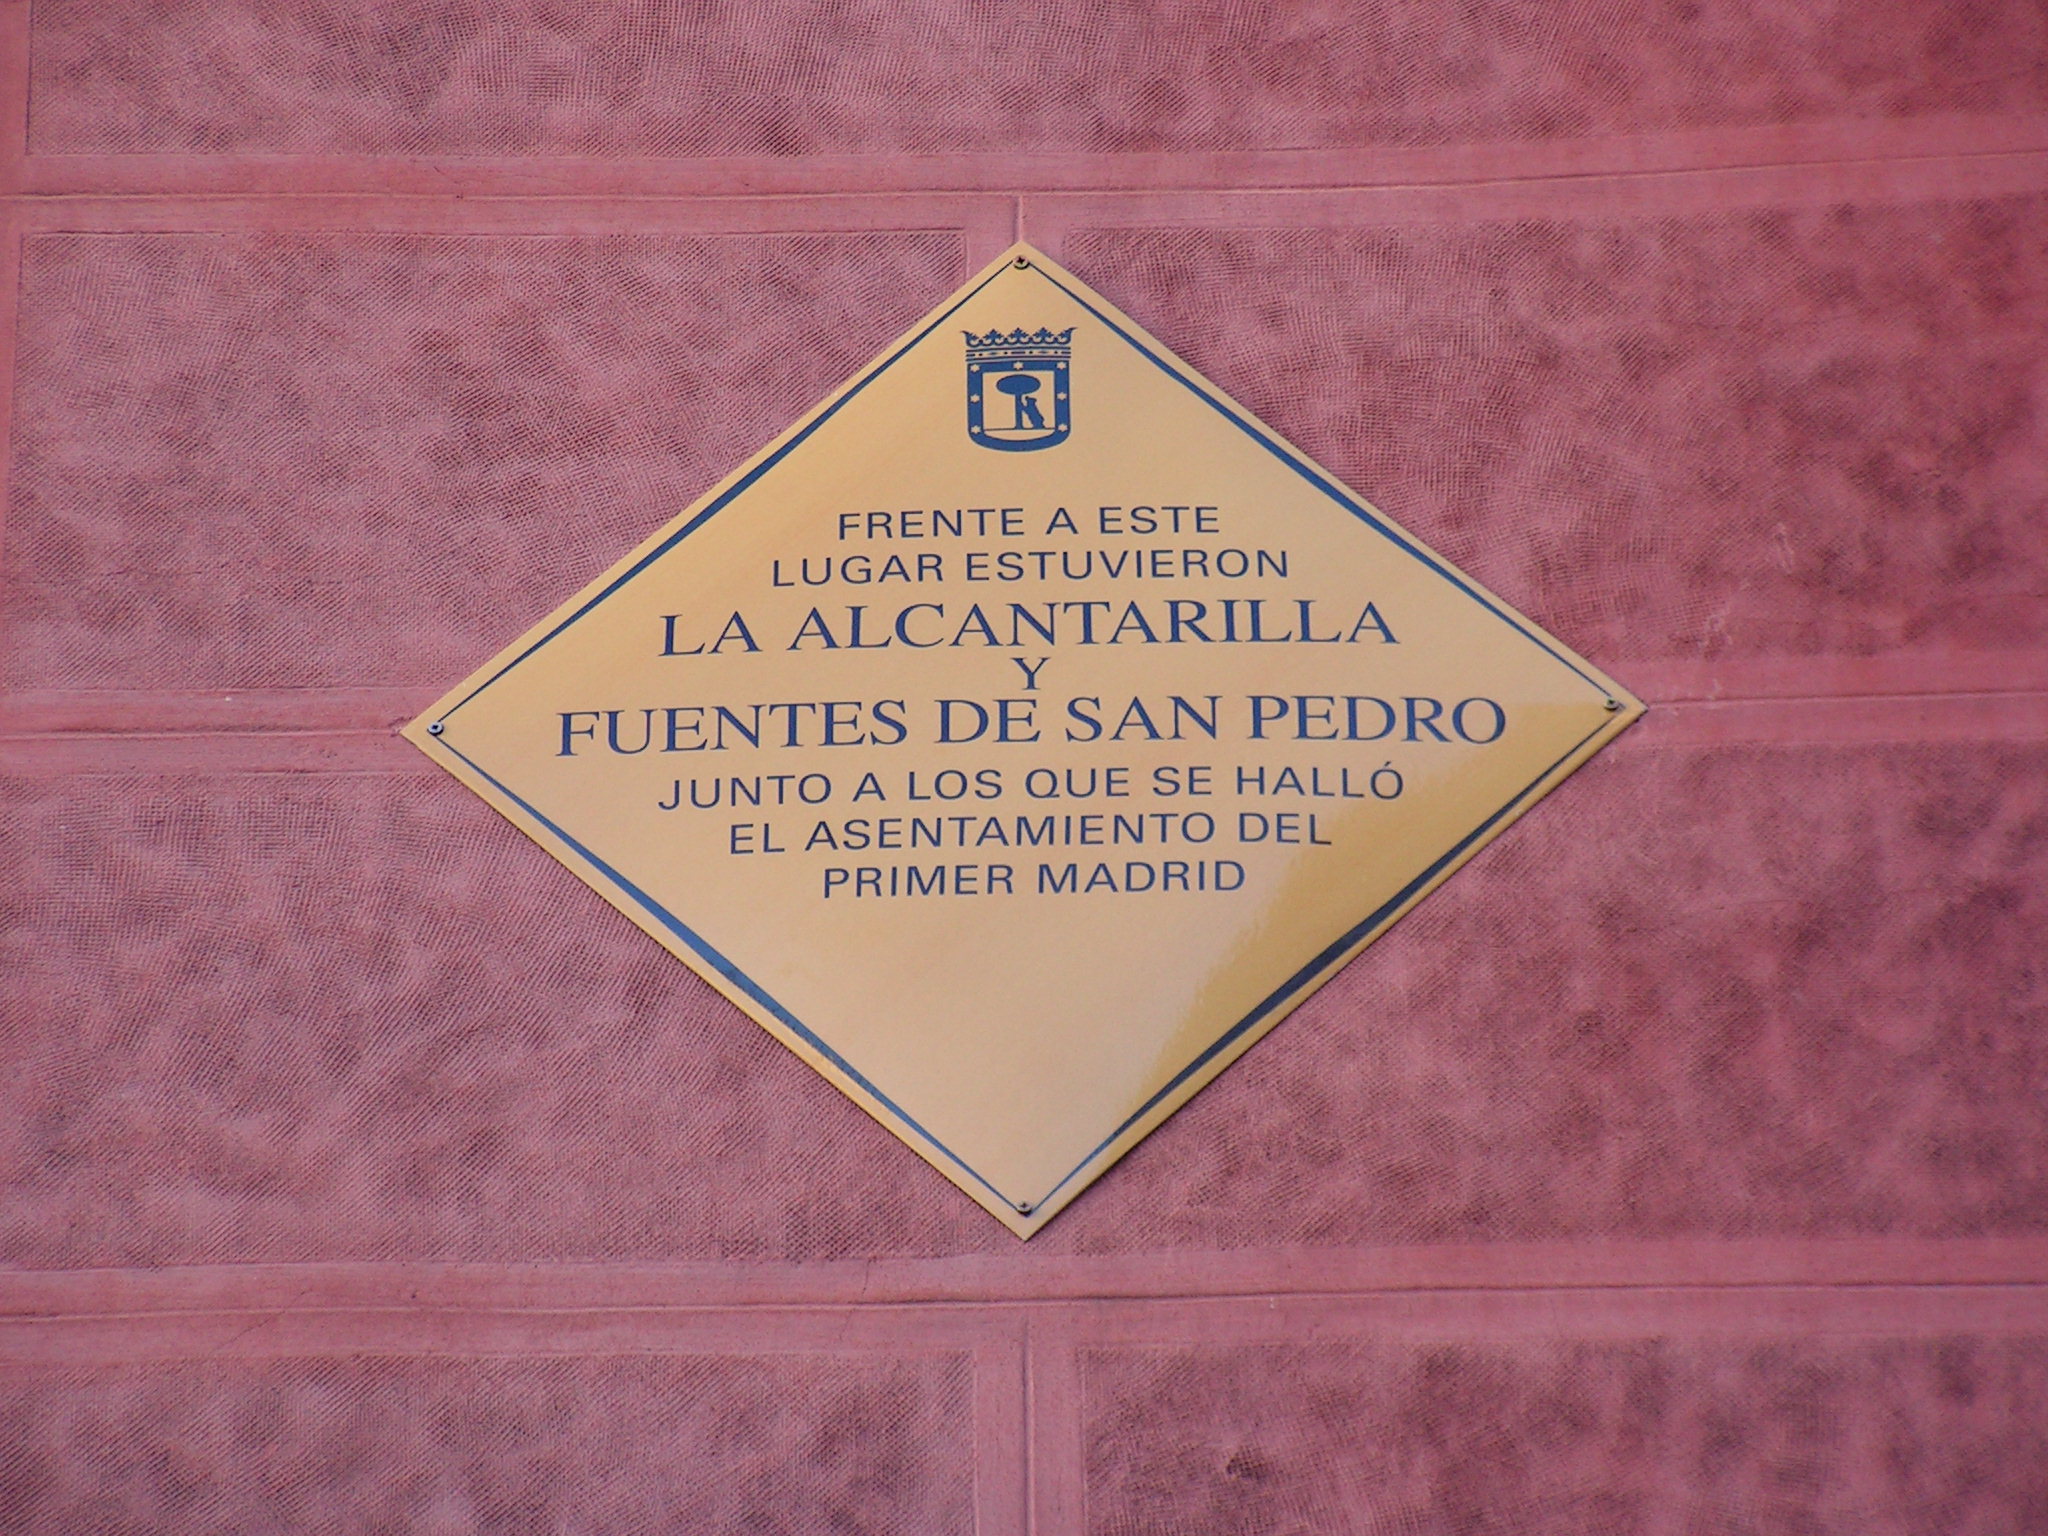 La Alcantarilla y Fuentes de San Pedro